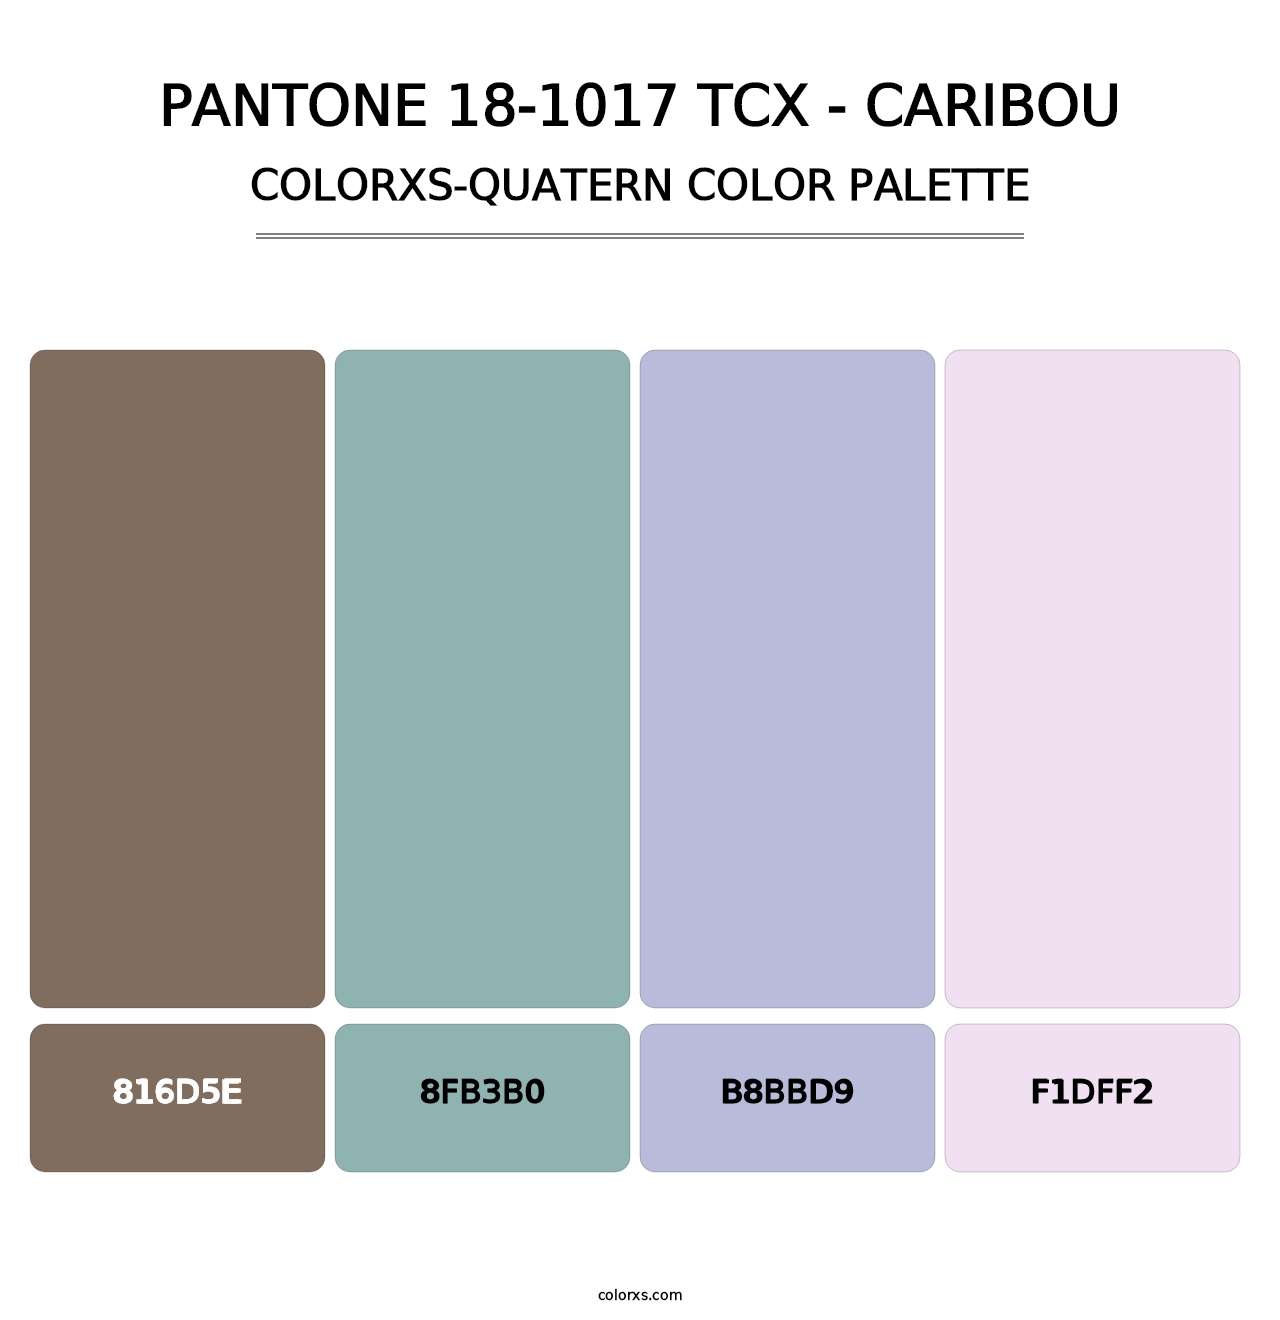 PANTONE 18-1017 TCX - Caribou - Colorxs Quatern Palette